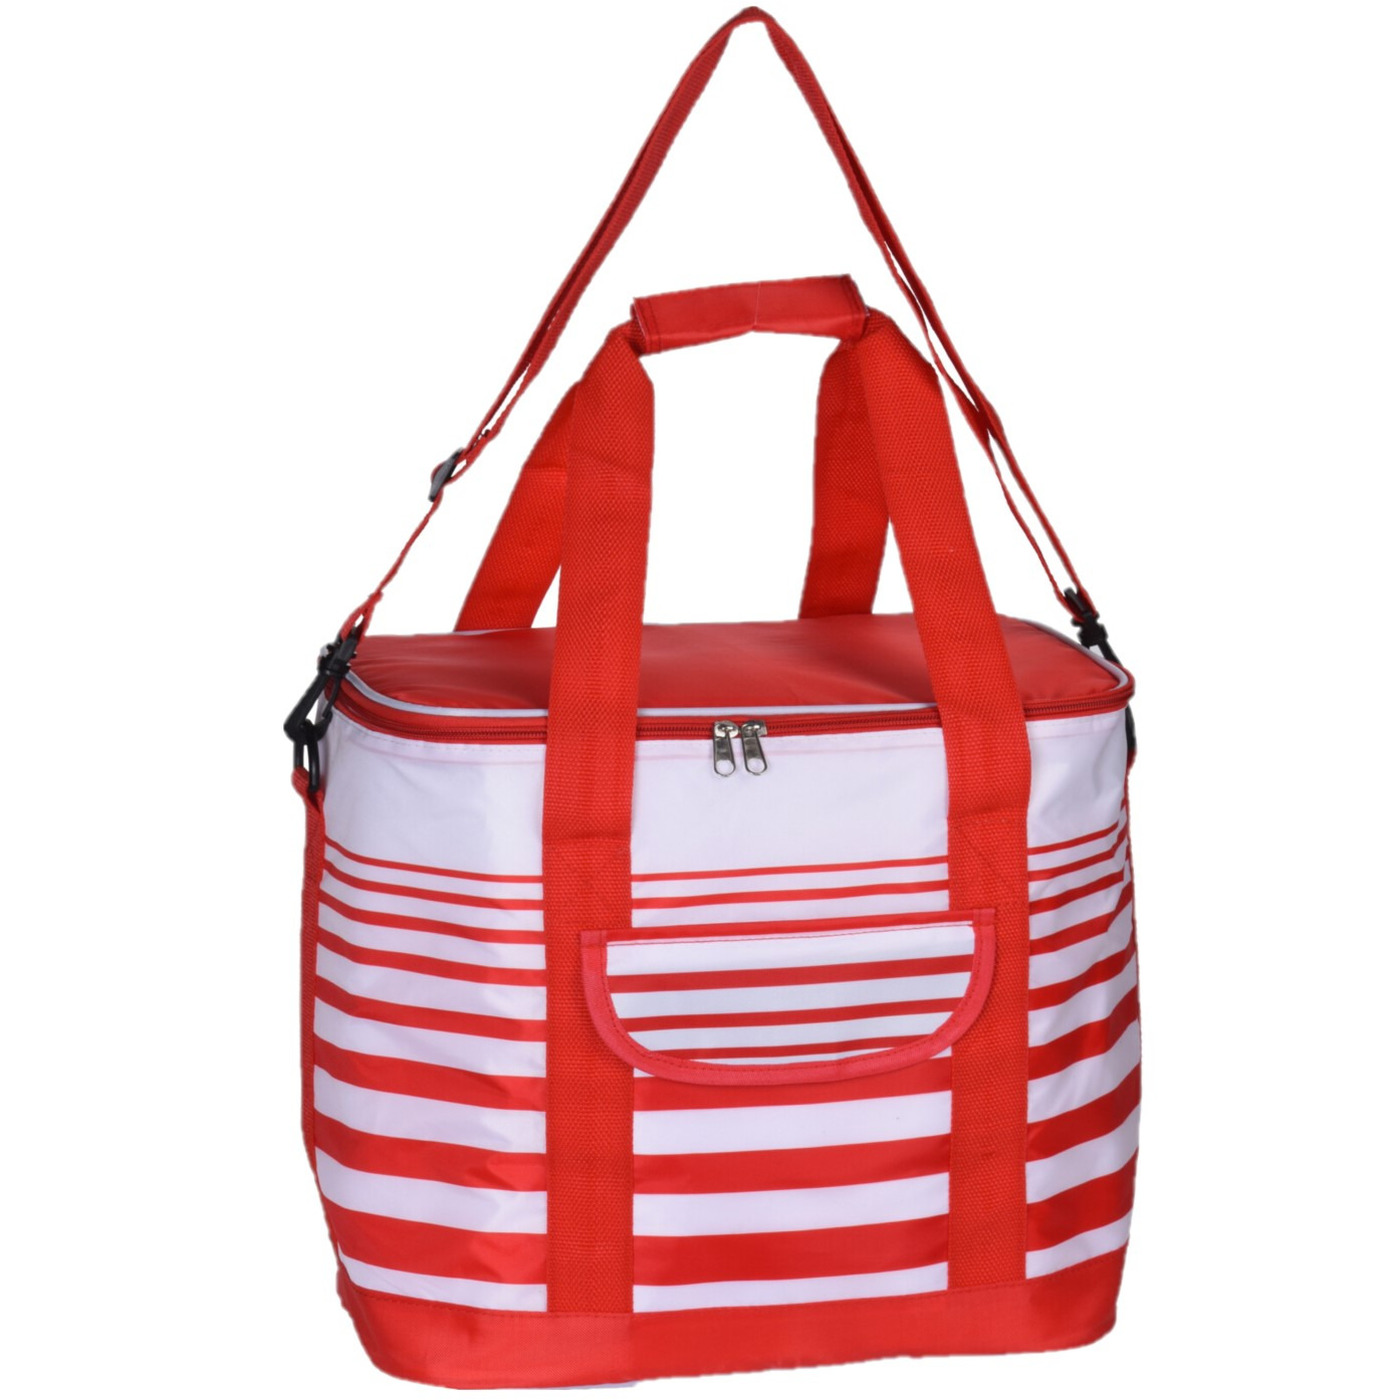 Koeltas draagtas schoudertas rood-wit gestreept 28 x 18 x 29 cm 12 liter